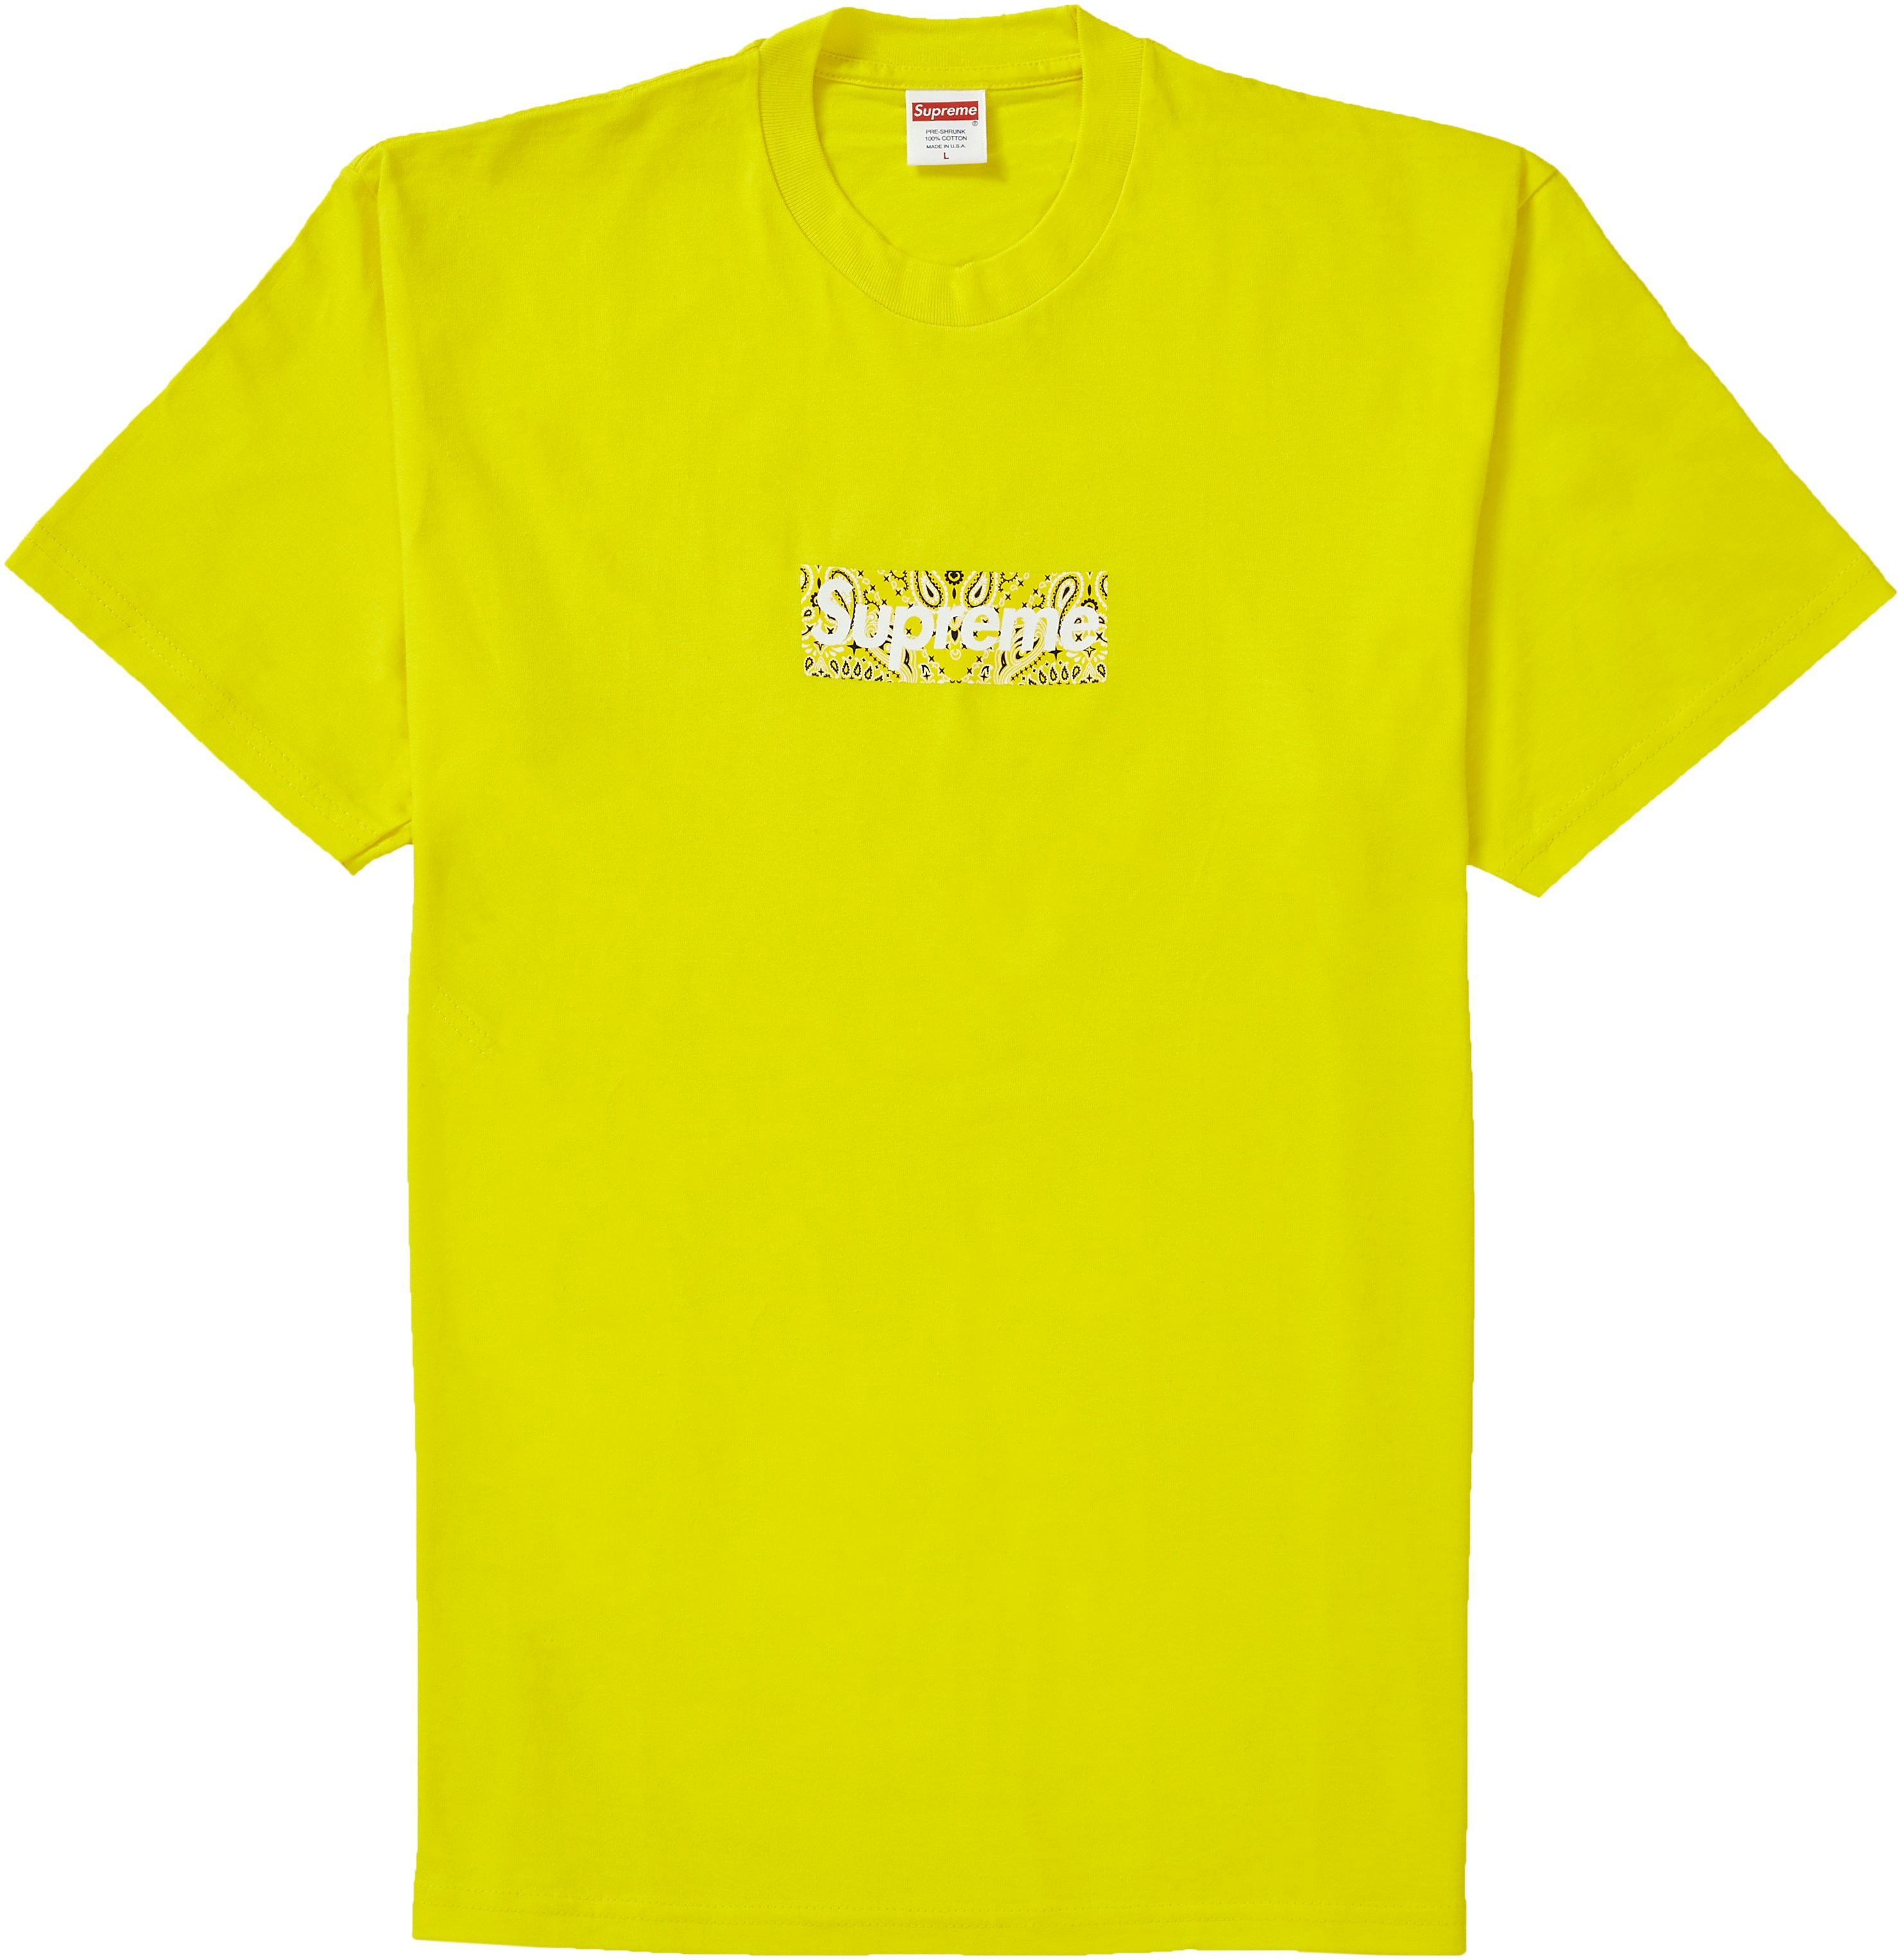 Supreme Bandana Box Logo Tee Yellow - Novelship